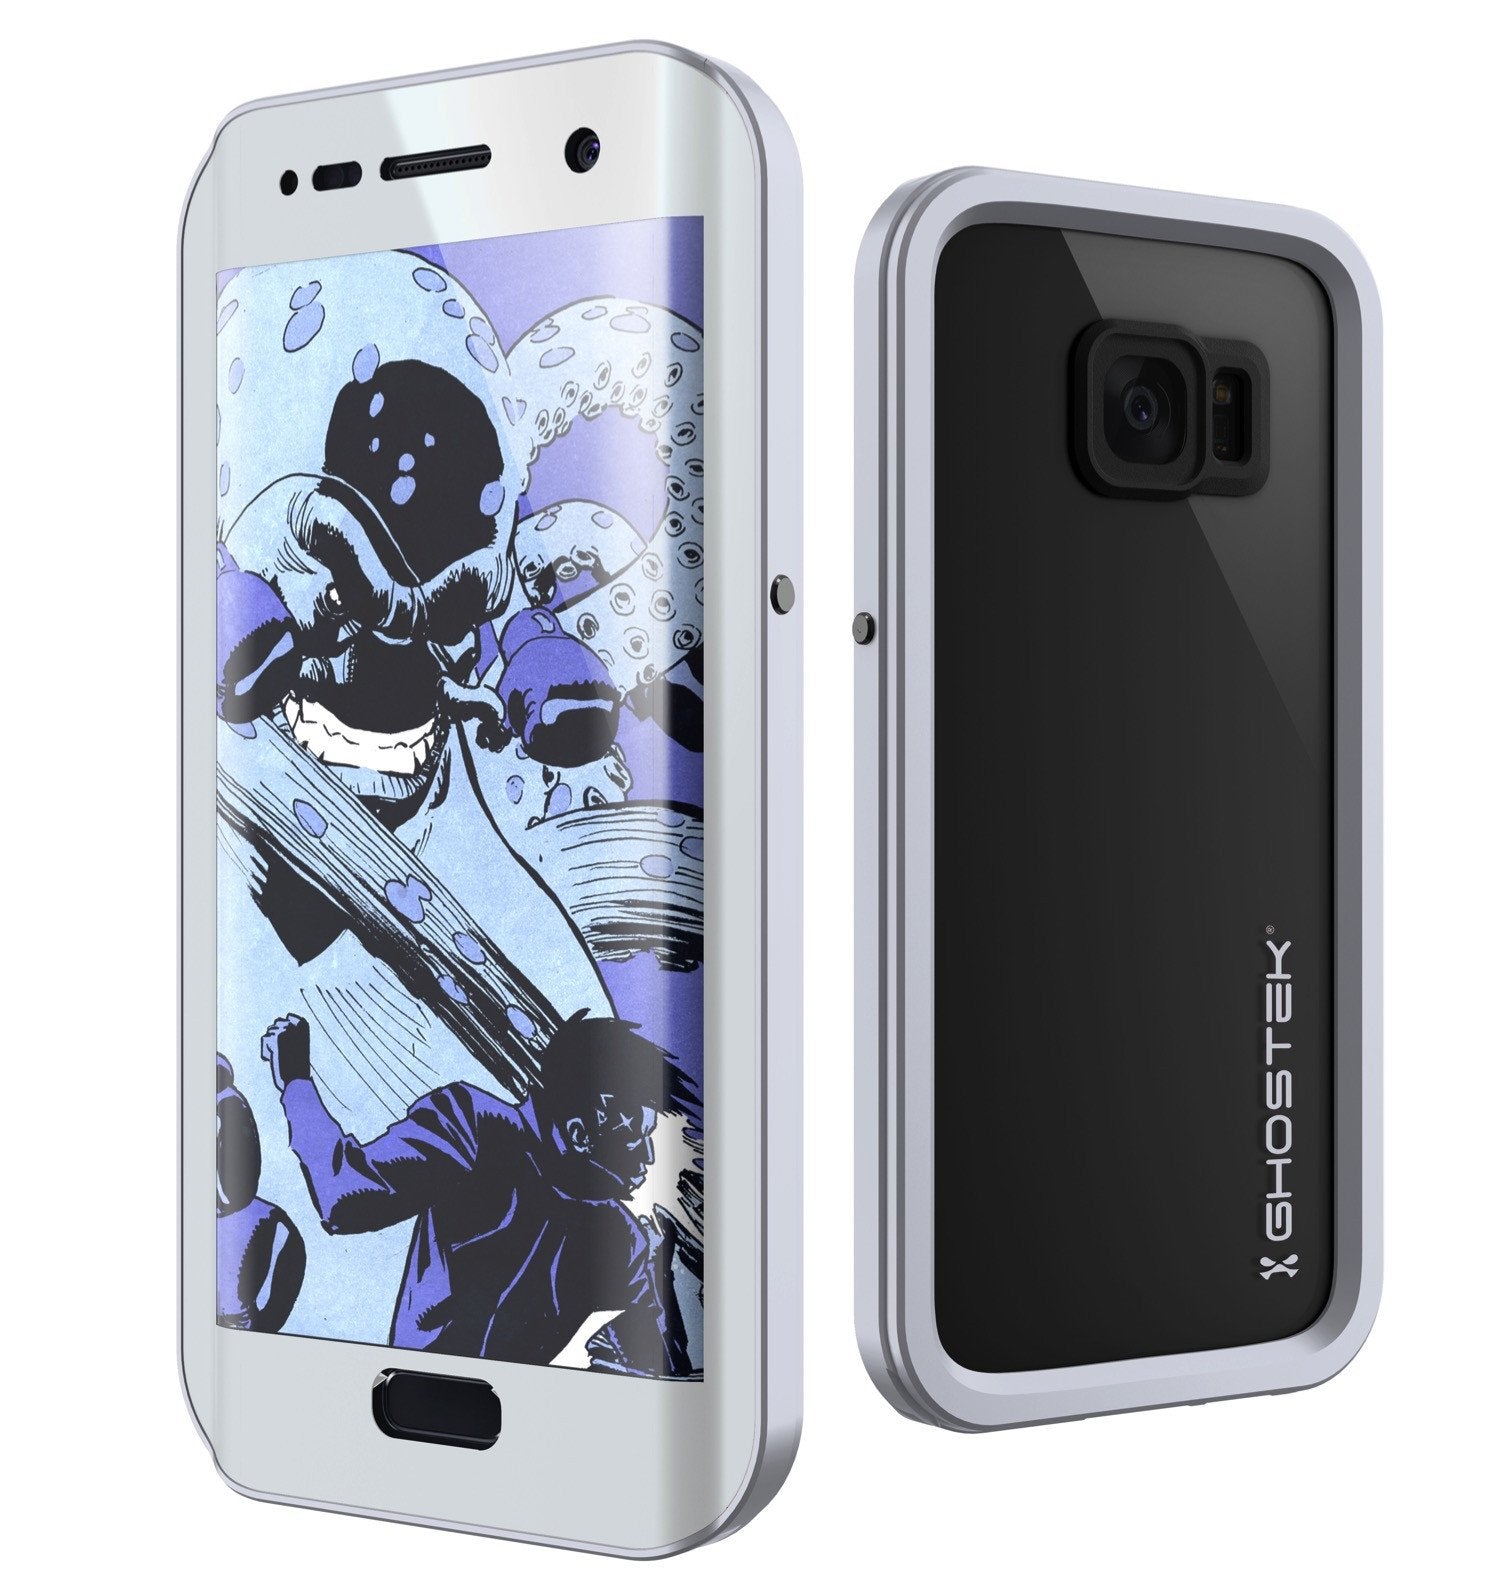 Galaxy S7 EDGE Waterproof Case, Ghostek Atomic 2.0 Silver Shock/Dirt/Snow Proof | Lifetime Warranty - PunkCase NZ